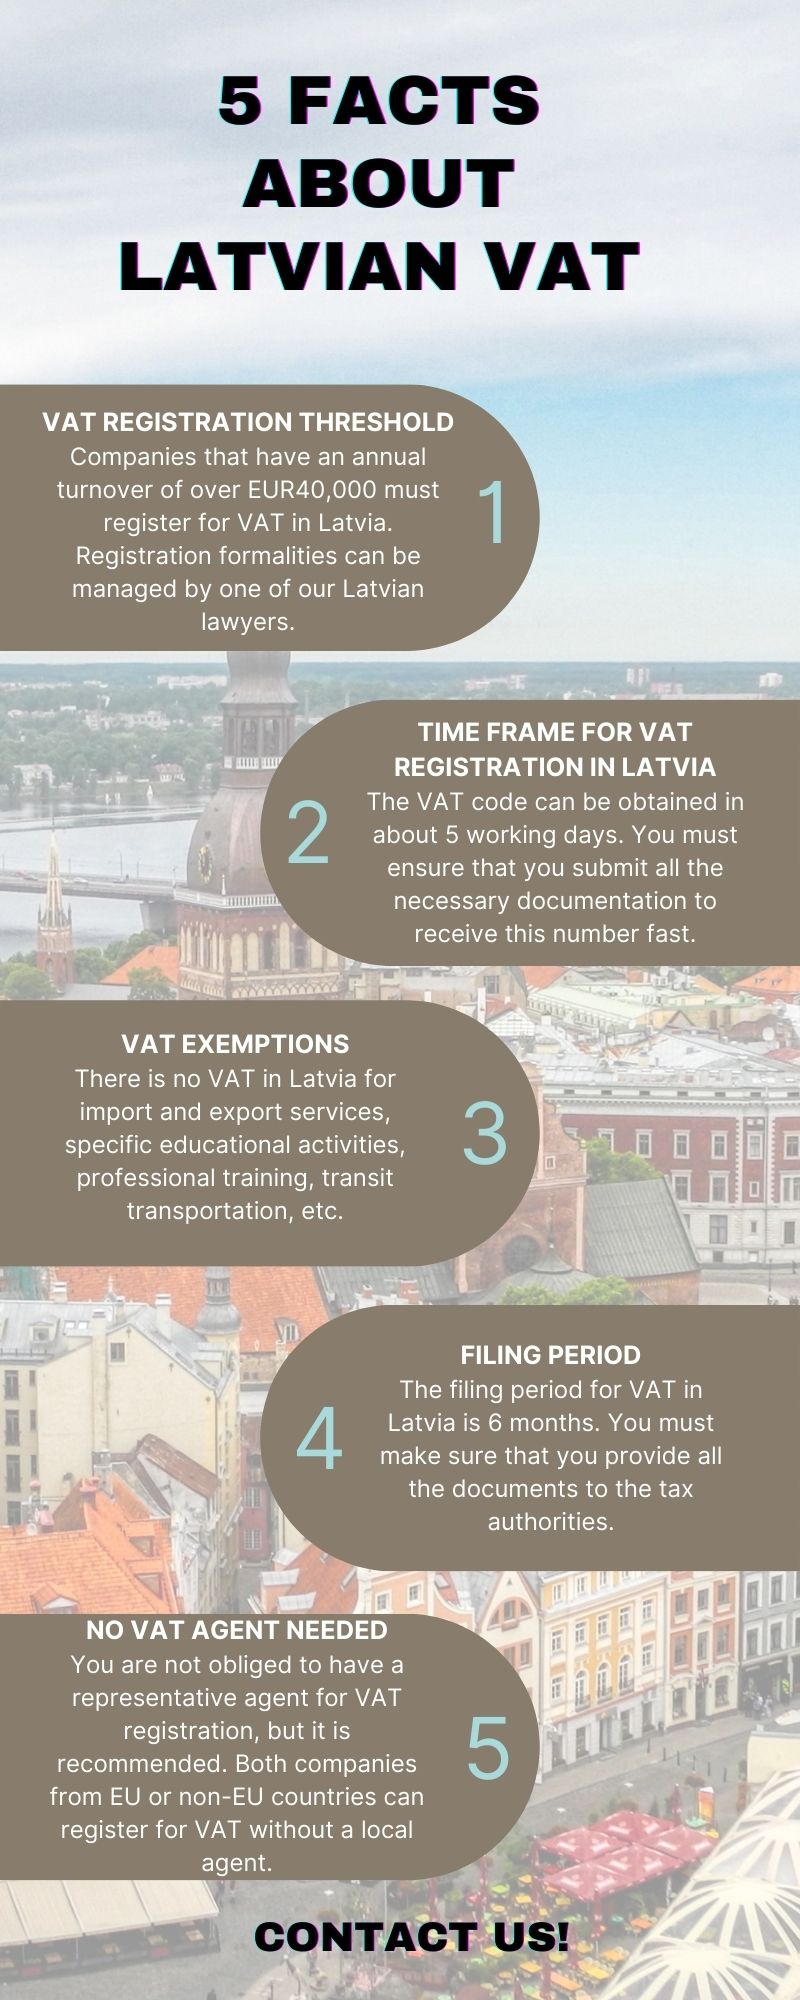 5 facts about Latvian VAT